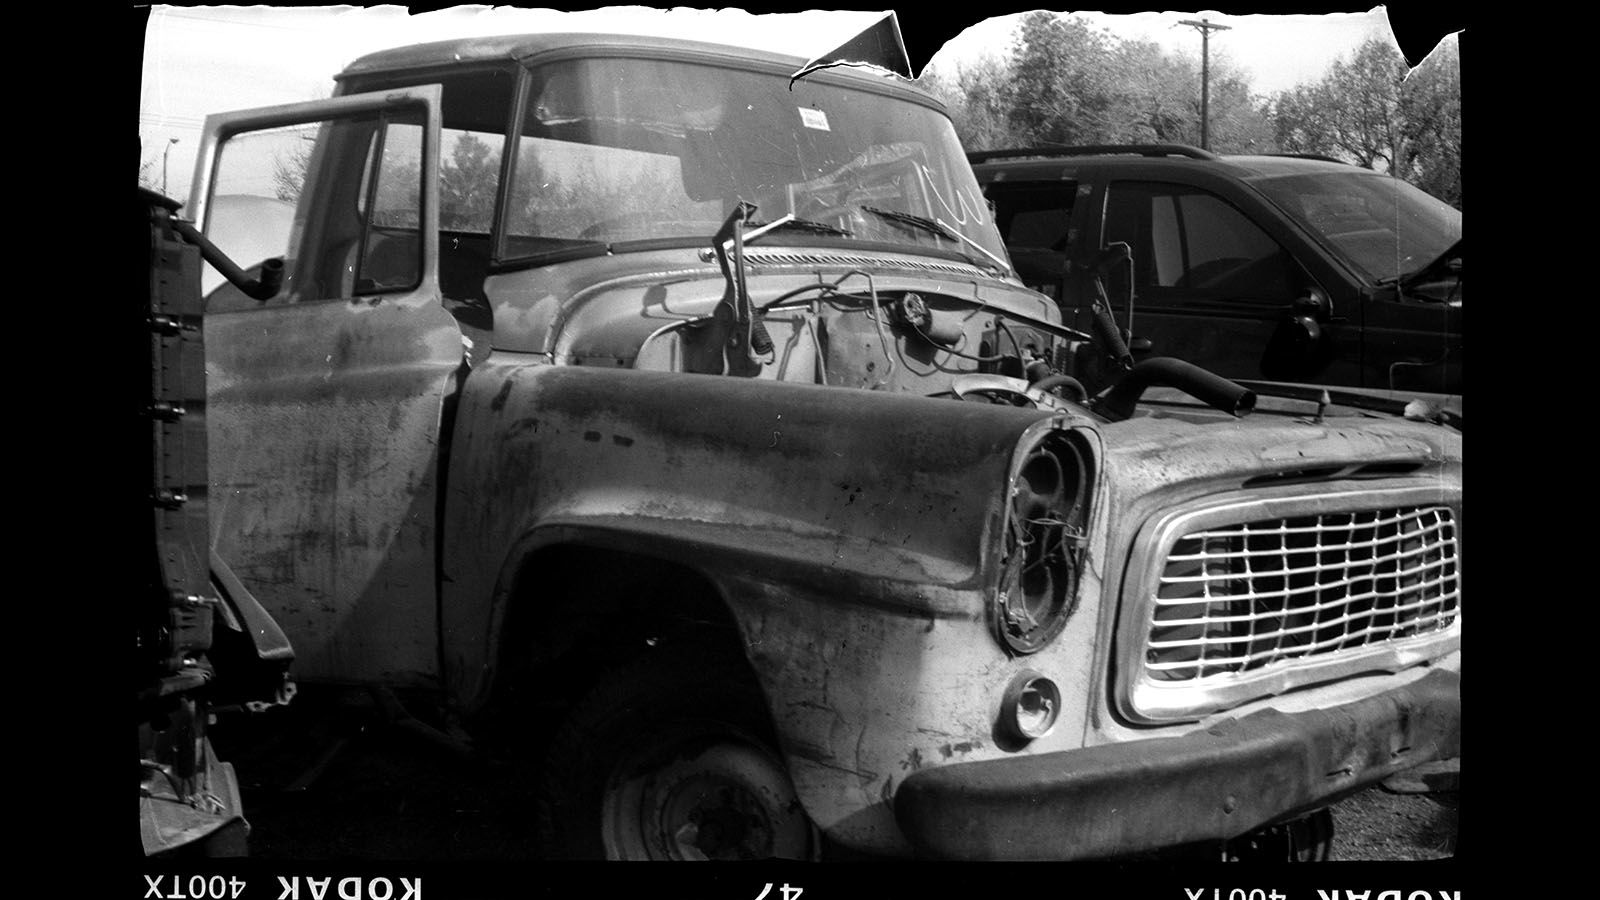 Junked 1959 International Harvester B-110 pickup